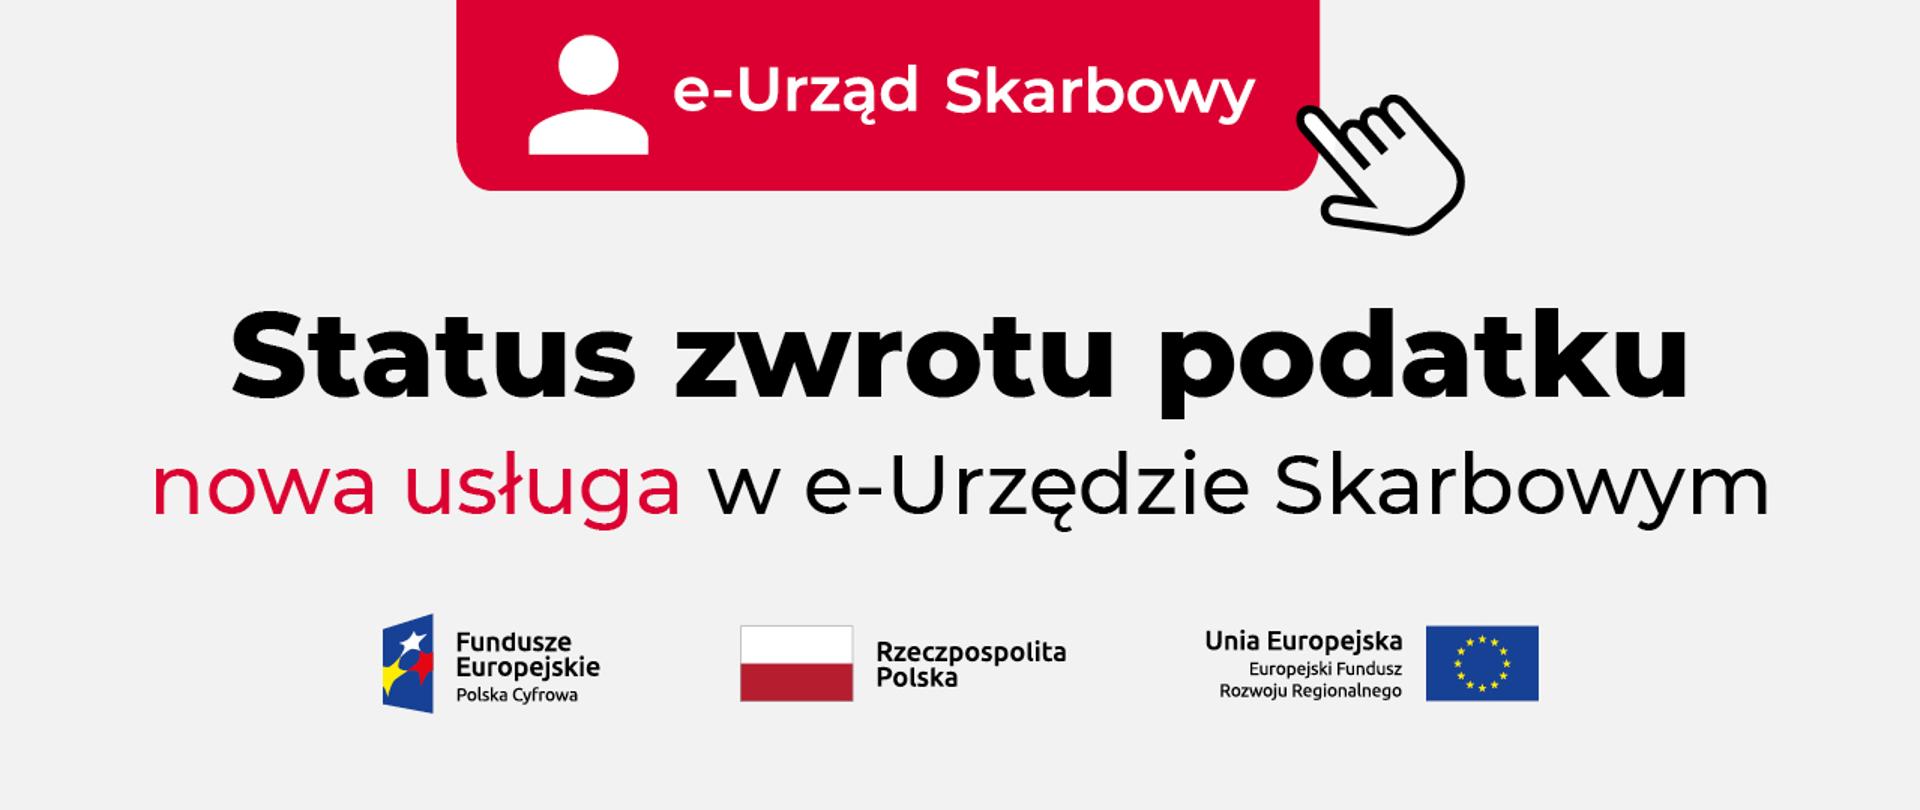 Grafika z logo e-Urzędu Skarbowego, logotypami Funduszy Europejskich, flagami Rzeczypospolitej Polskiej i Unii Europejskiej i napisem Status zwrotu podatku, nowa usługa w e-Urzędzie Skarbowym.